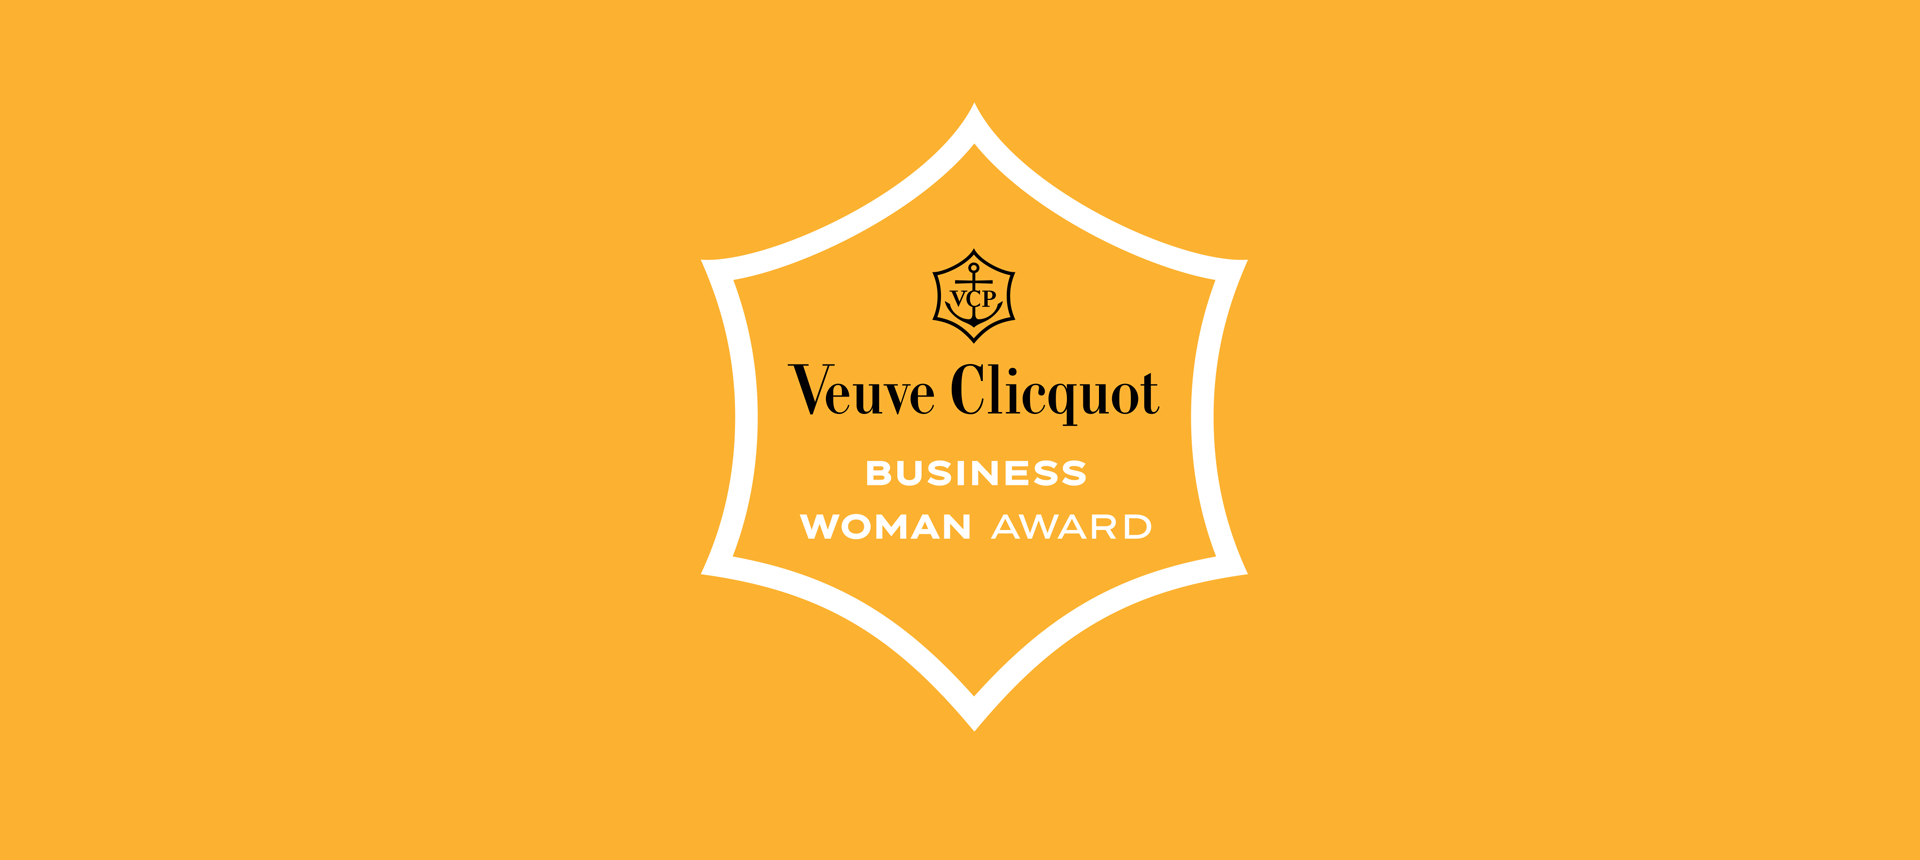 თინათინ რუხაძემ Veuve Clicquot-ს კონკურსში გაიმარჯვა